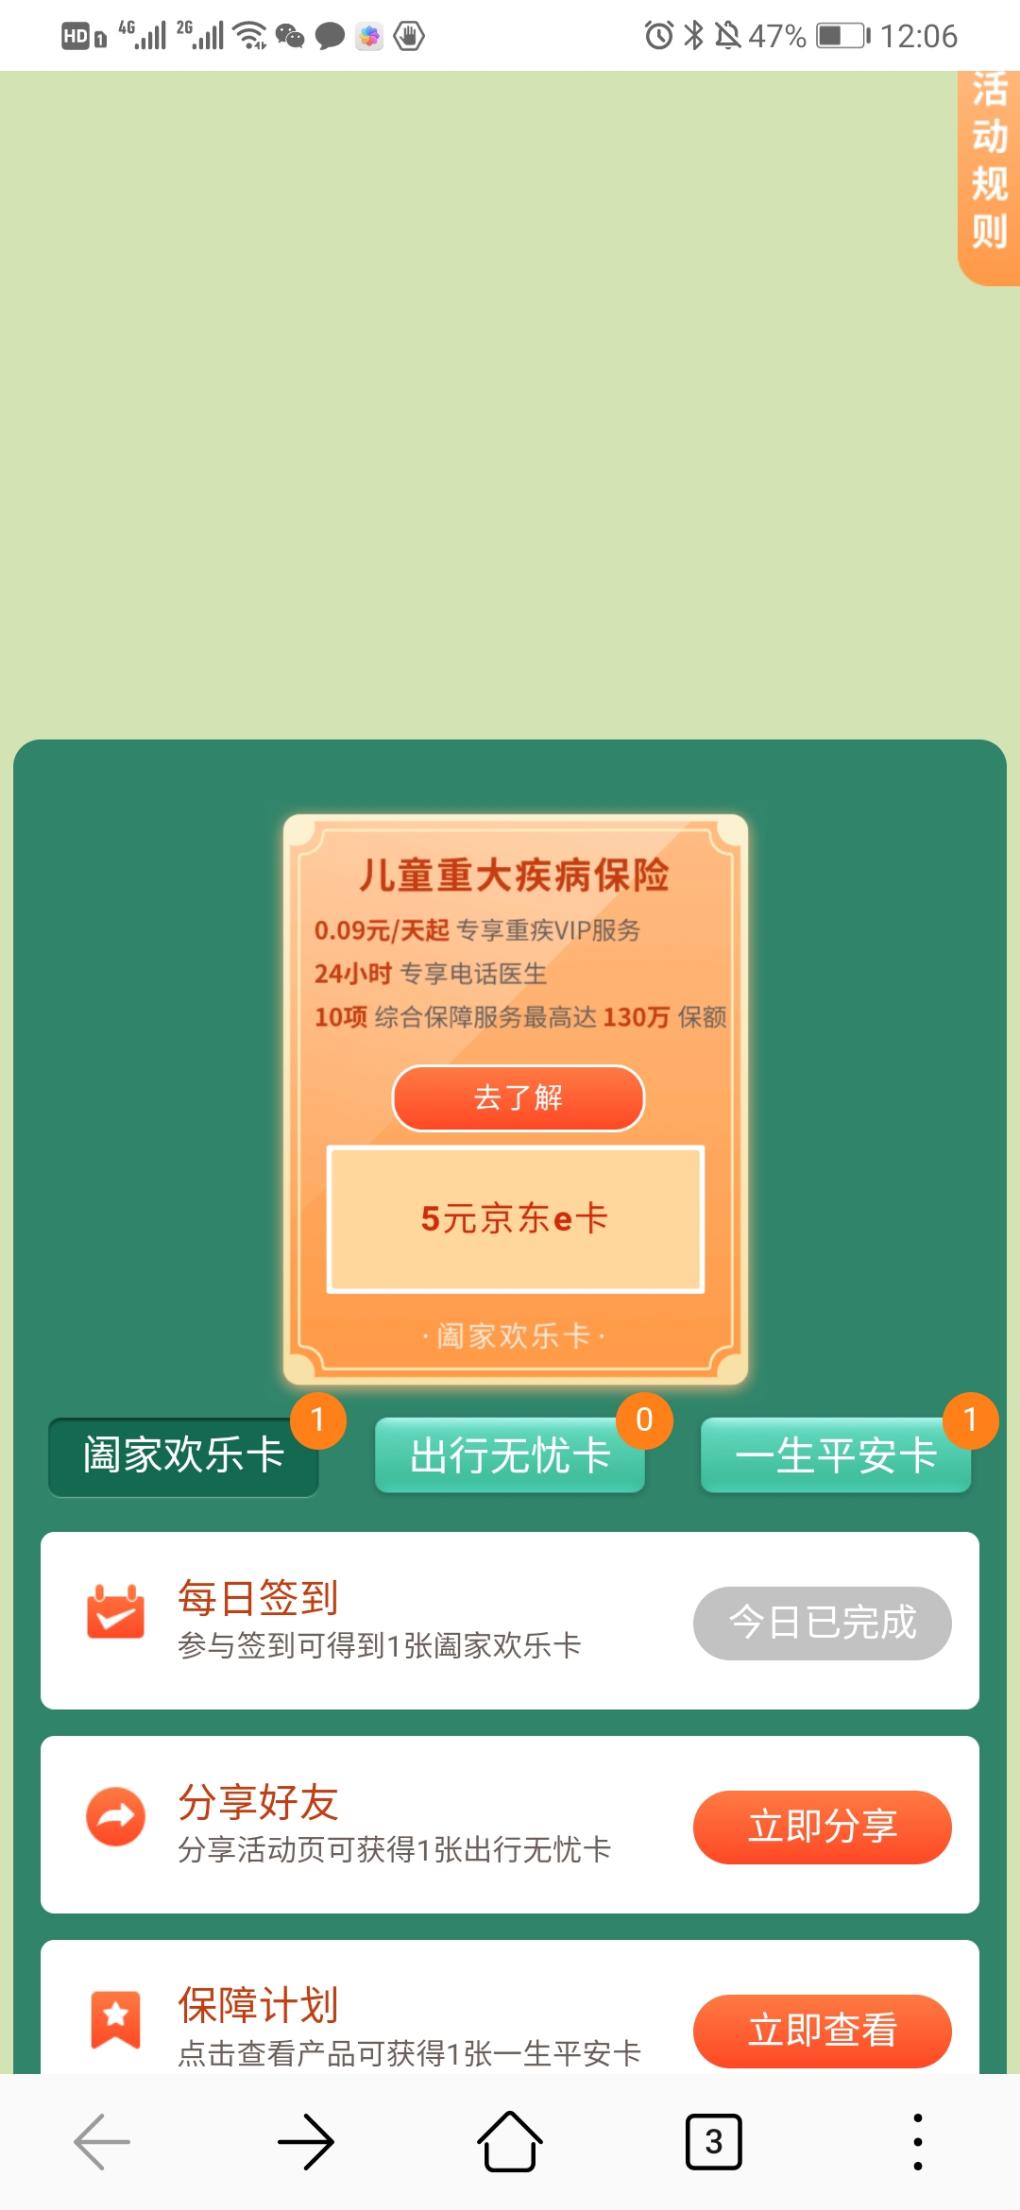 中国平安 10000张京东卡-惠小助(52huixz.com)